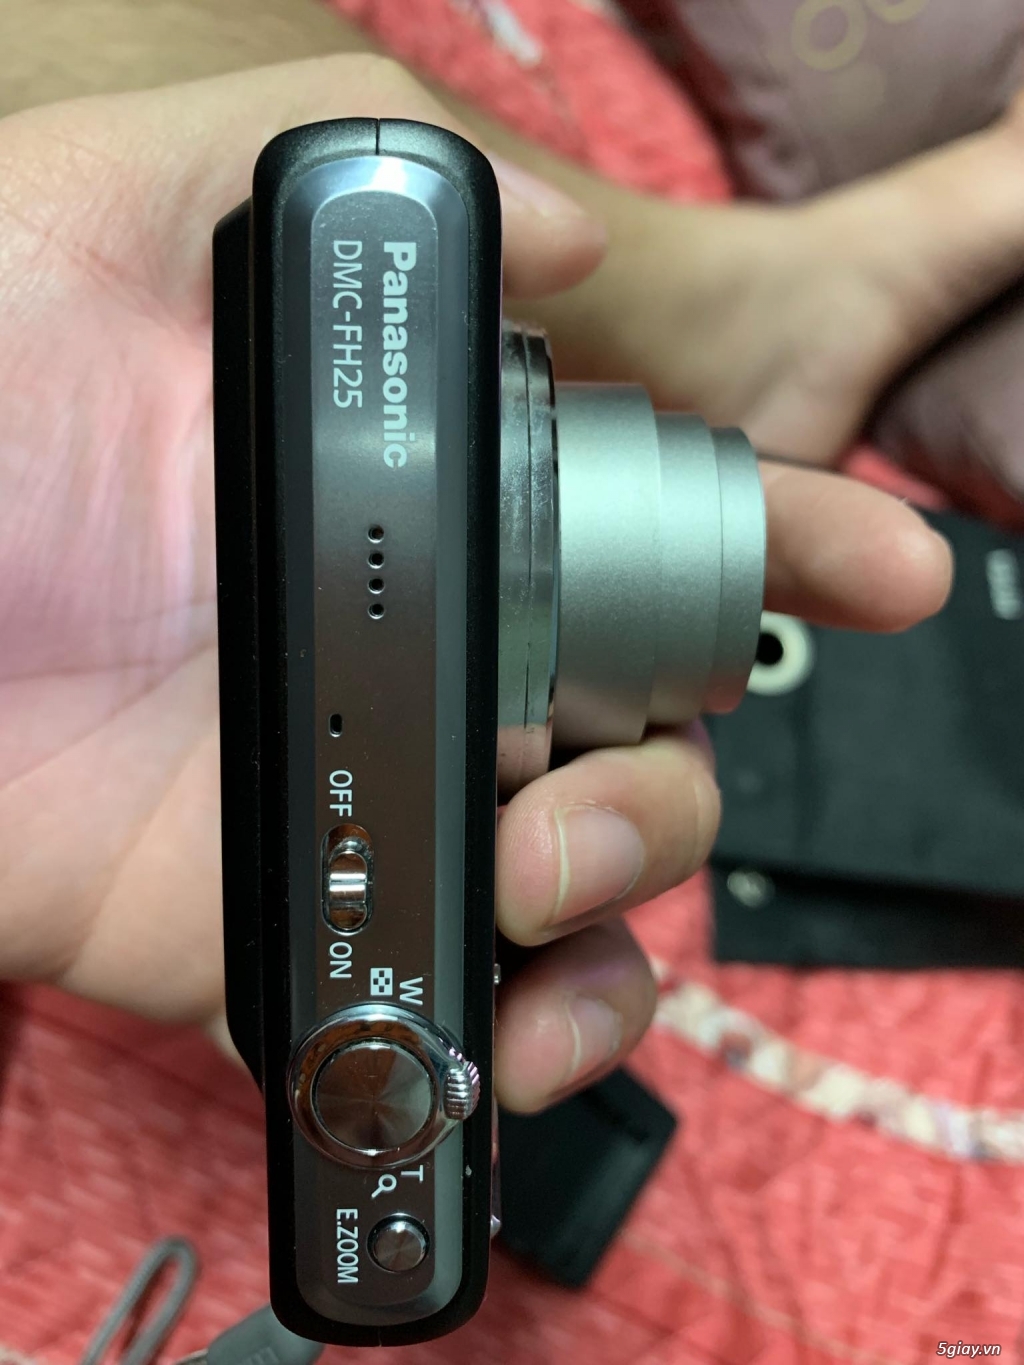 Bán Panasonic Lumix Dmc-fh25 ong kính Leica zoom8x như mới - 2